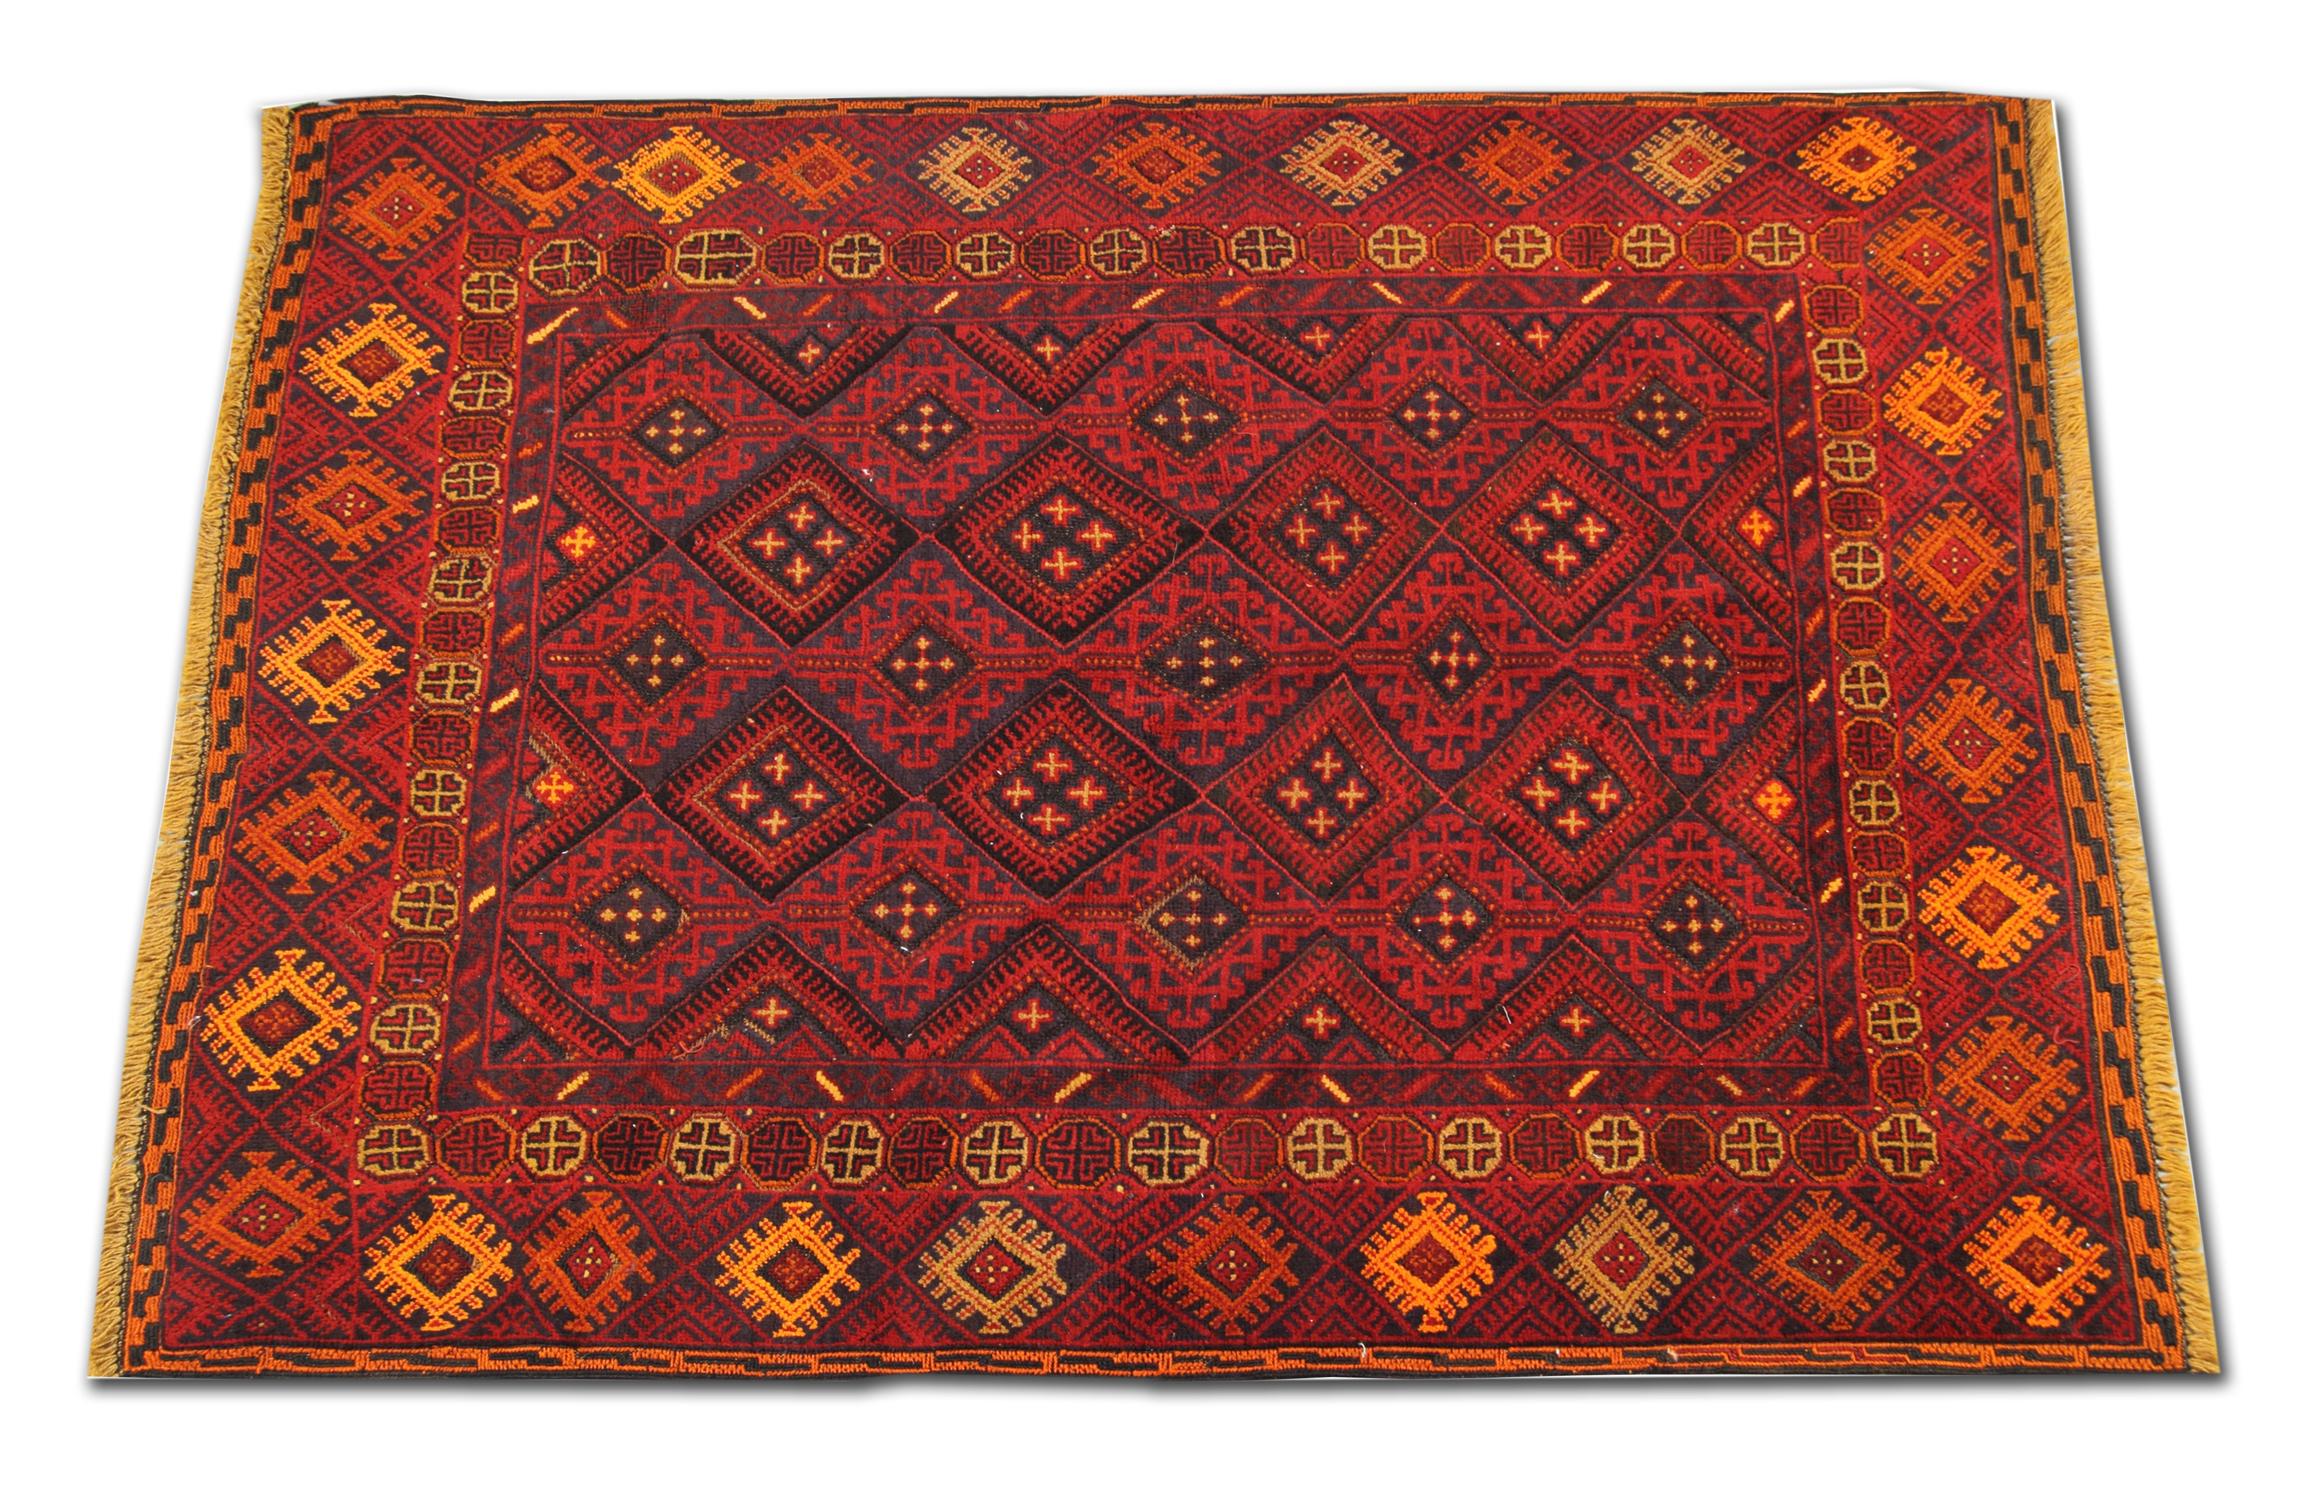 Afghan Wool Handmade Carpet Oriental Rug Traditional Deep Red Rugs Square Turkmen